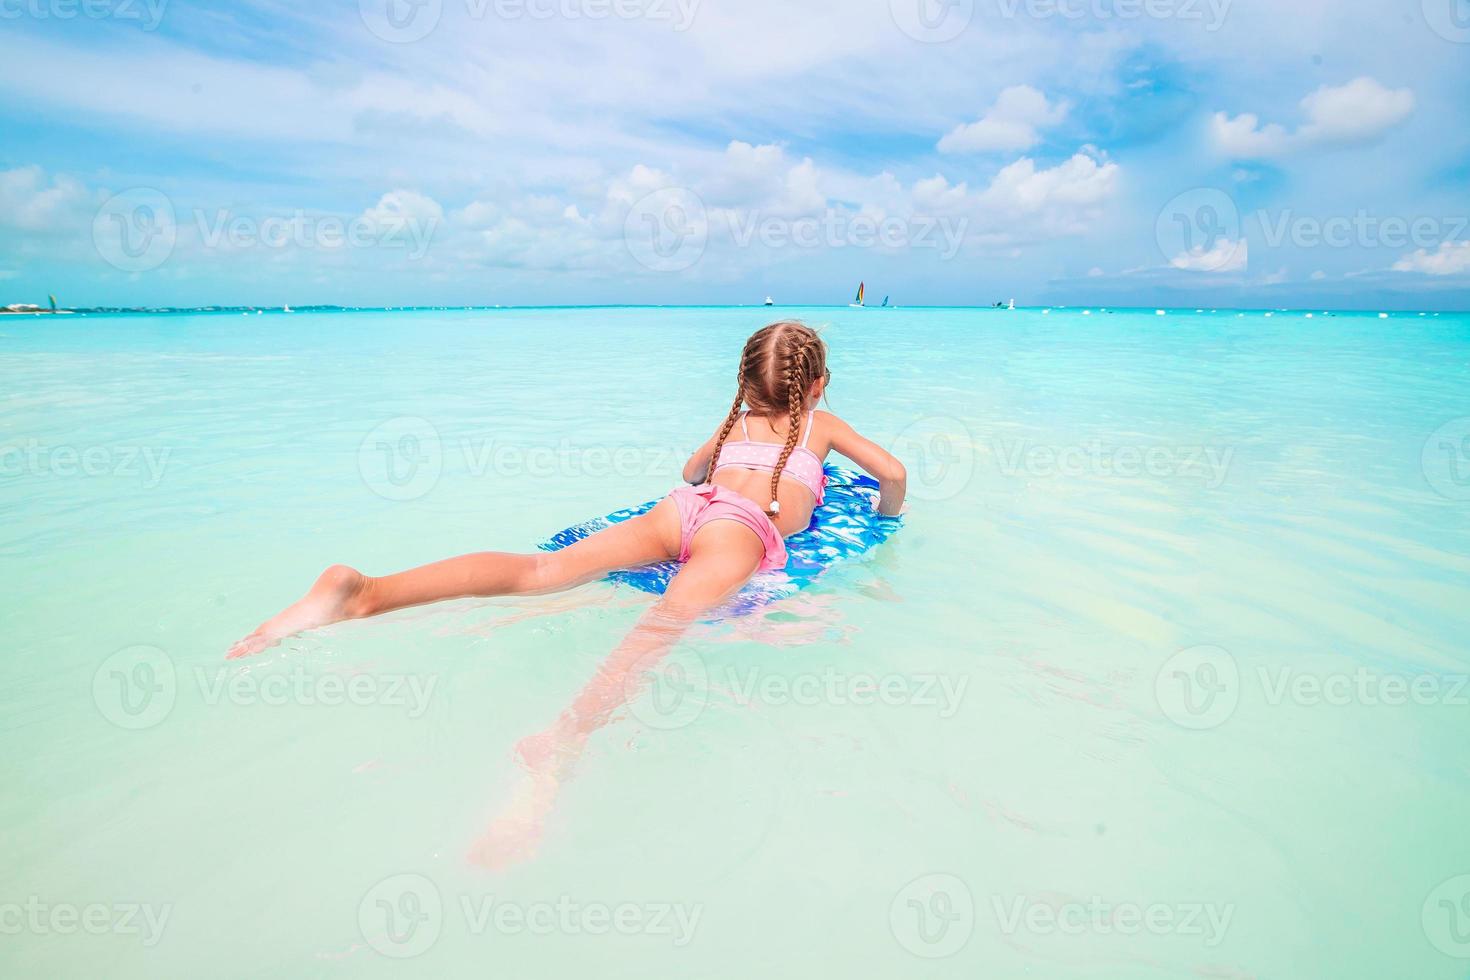 petite fille se reposant sur un matelas pneumatique gonflable dans la mer photo